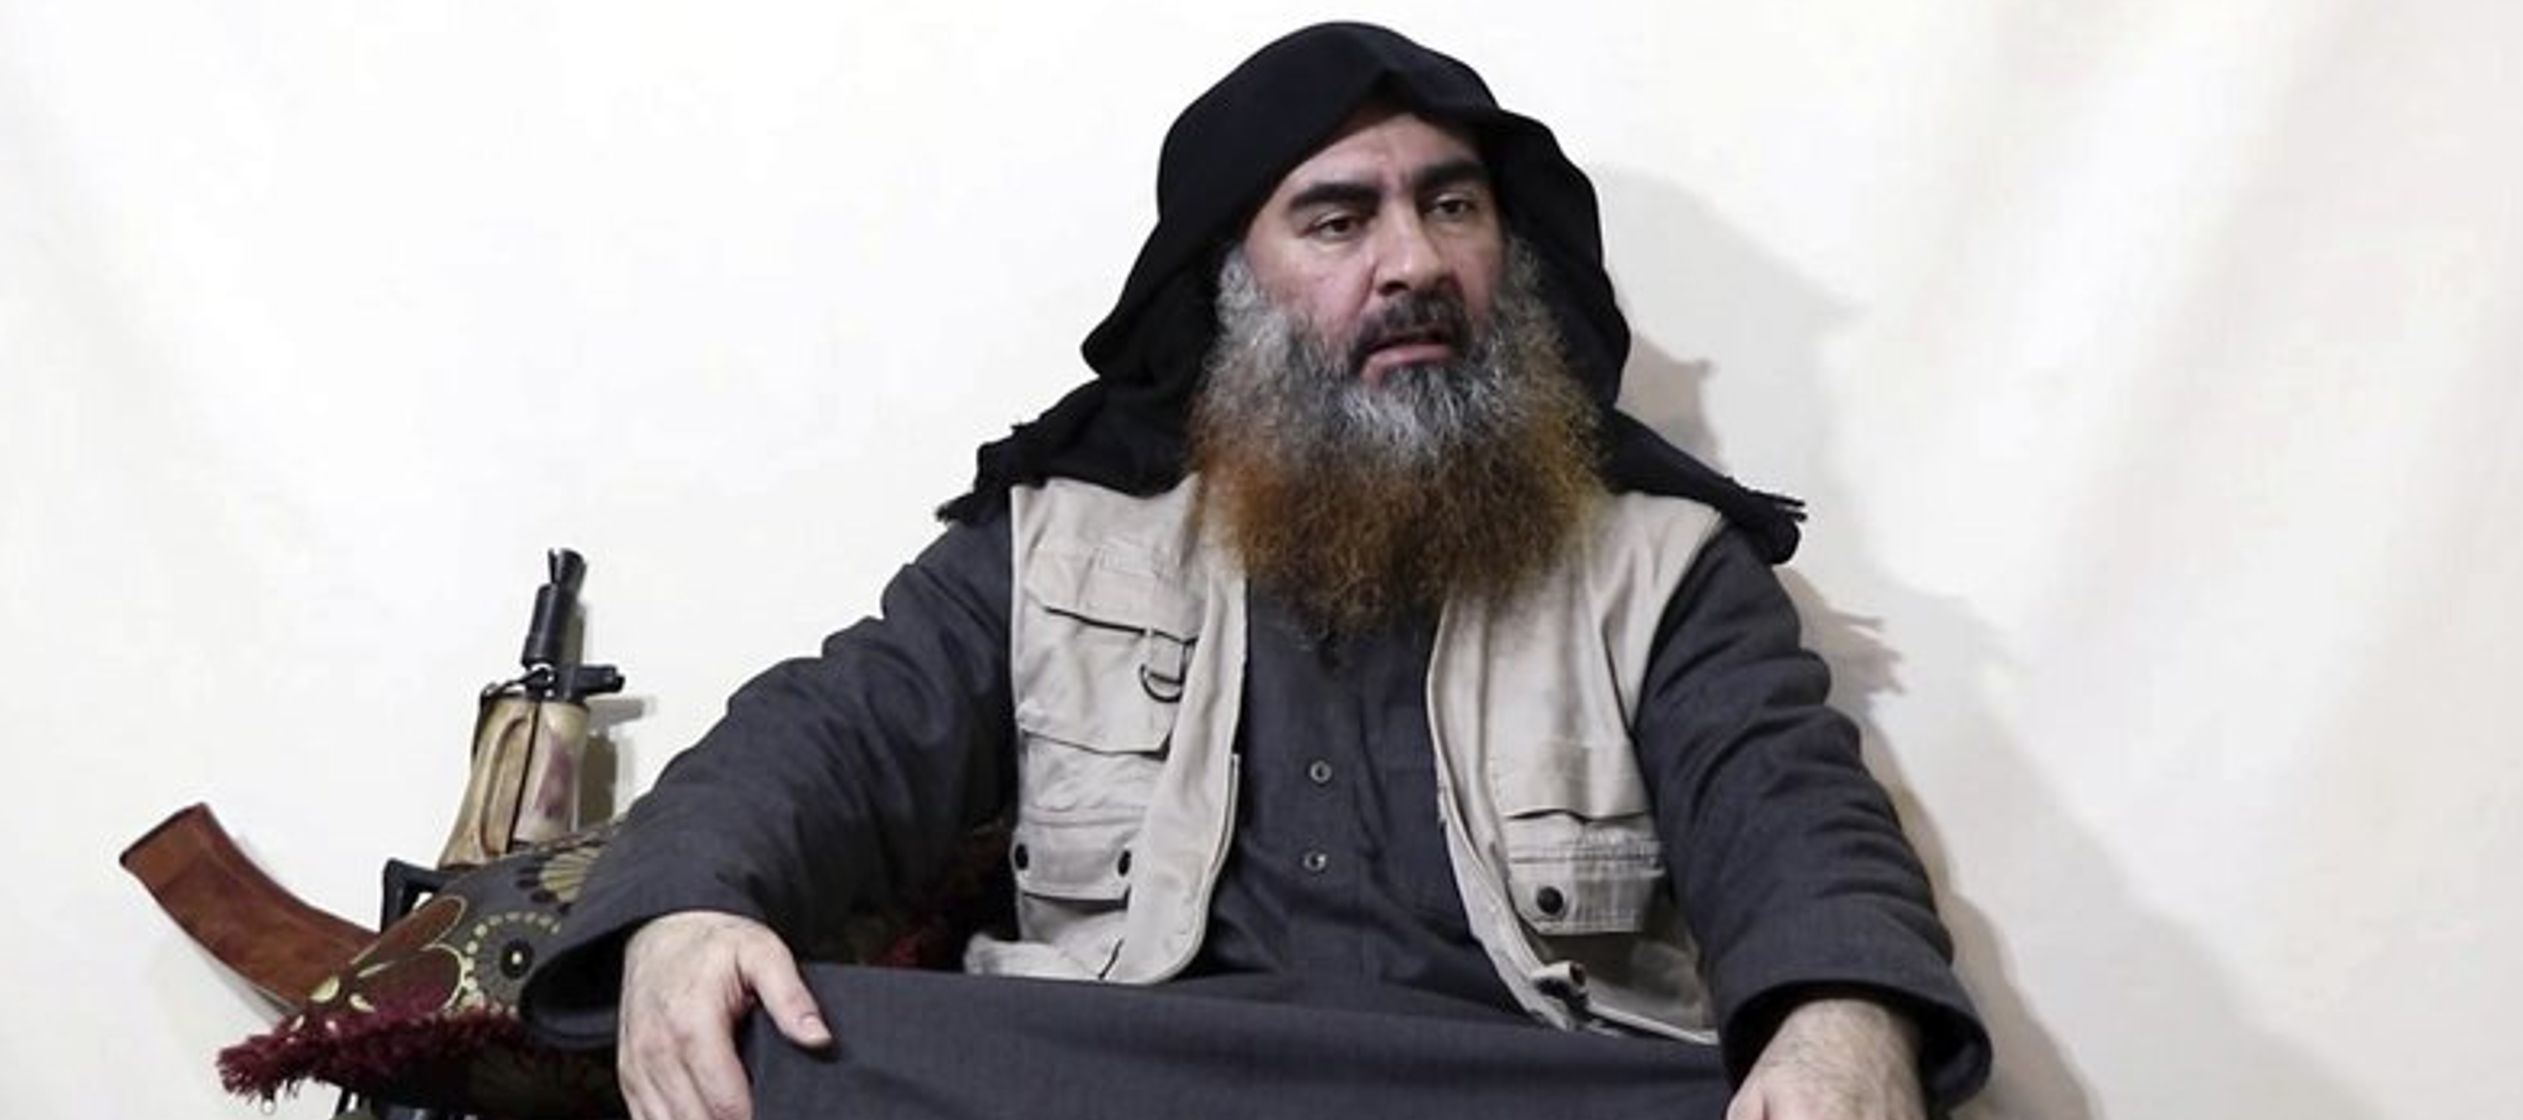  El líder del grupo Estado Islámico apareció por primera vez en cinco...